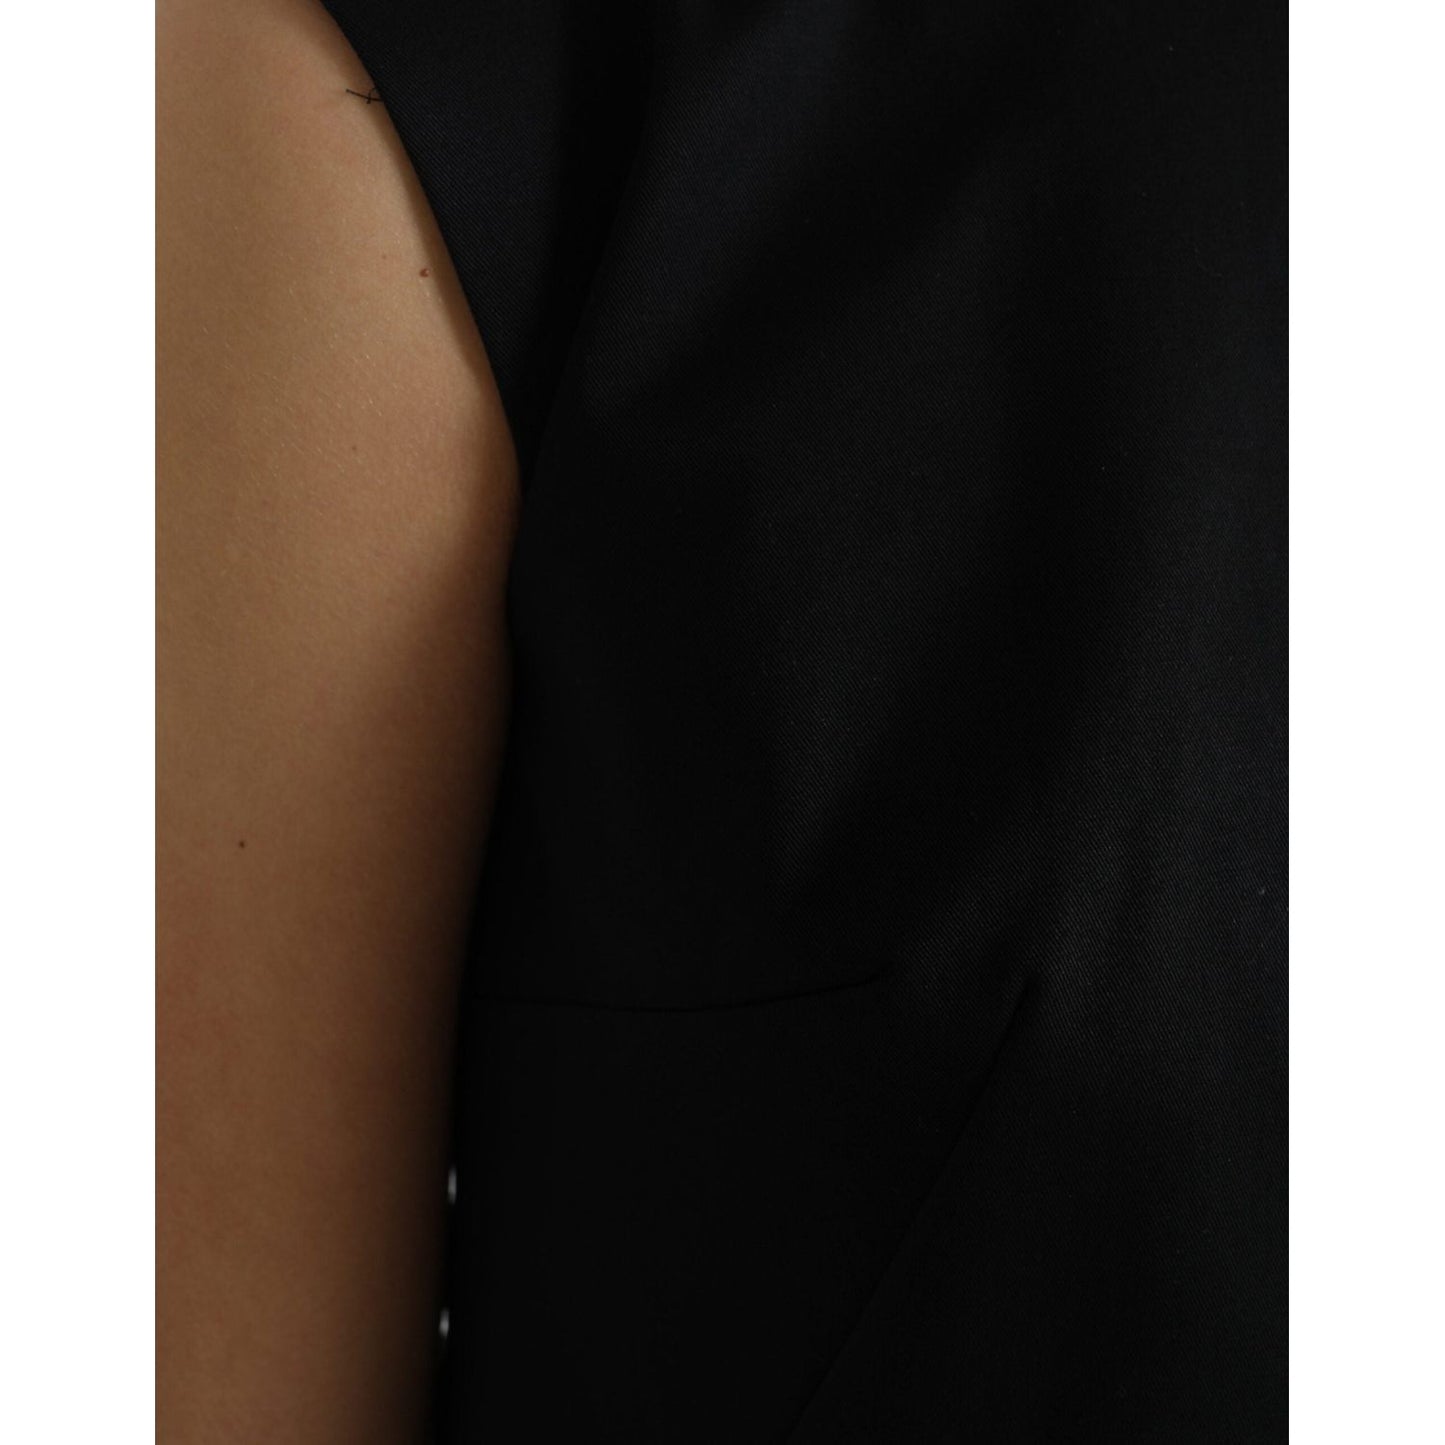 Dolce & Gabbana Elegant Sleeveless Shift Mini Dress elegant-sleeveless-shift-mini-dress